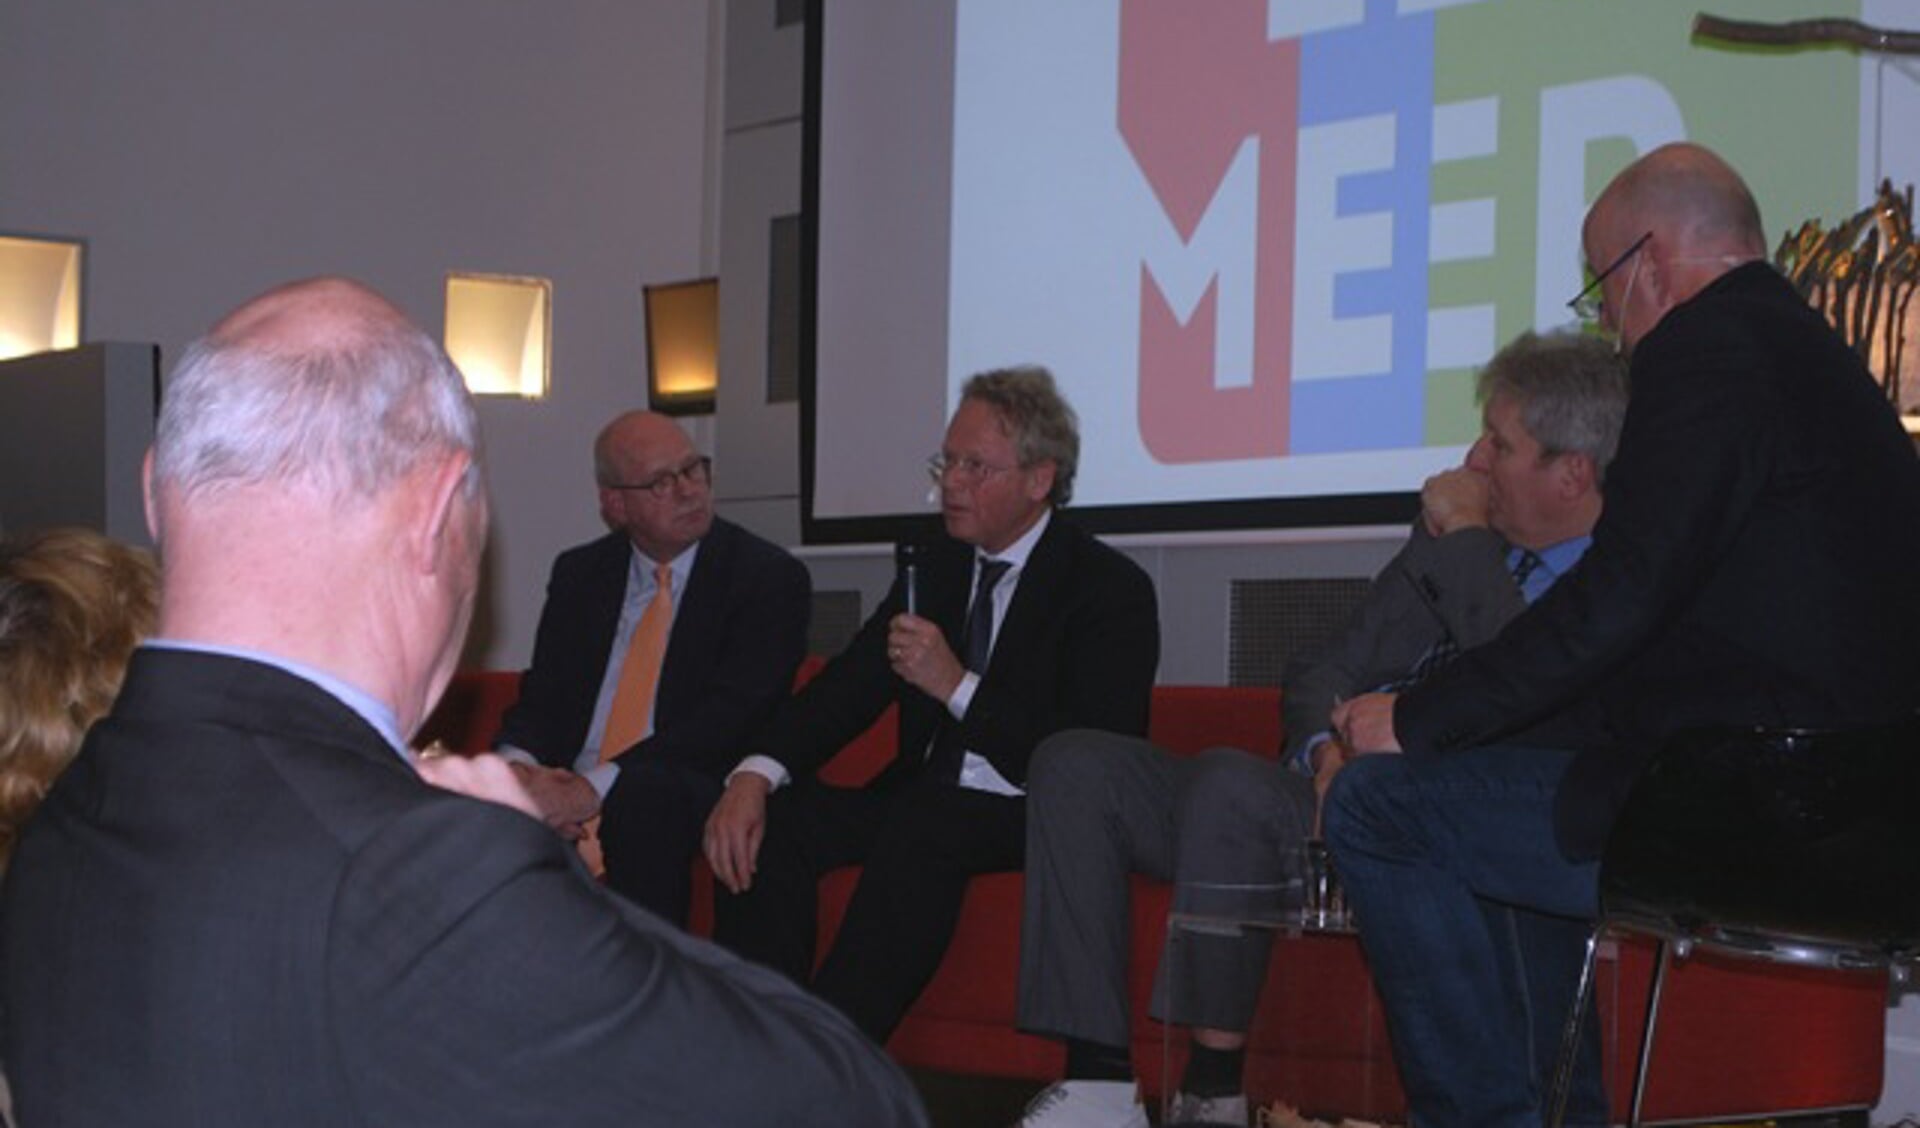 Een interview voor alle gasten met (van links naar rechts:) Fred Dellemijn (wethouder Heiloo), Dick Winkelhuis (voorzitter van de Stichting Beheerschap Boekelermeer) en Victor Kloos (wethouder Alkmaar).
